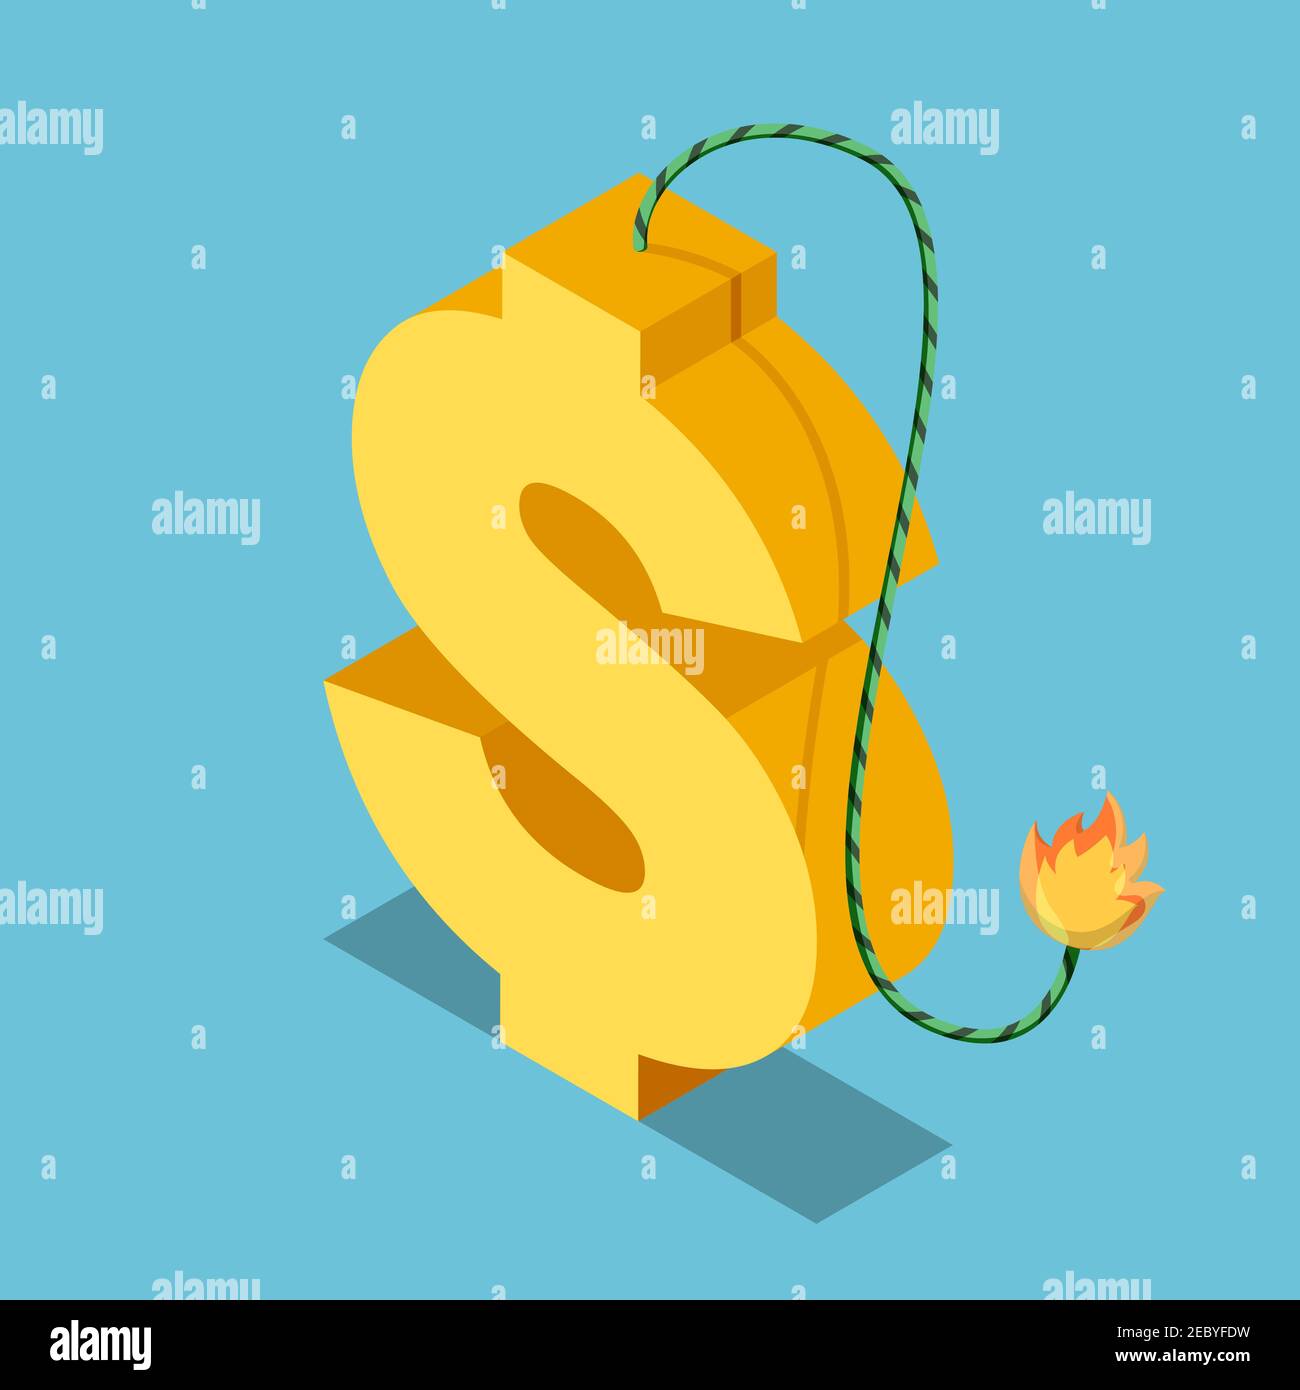 Flaches 3D isometrisches goldenes Dollar-Symbol mit brennender Sicherung. Finanz- und Wirtschaftskrise Konzept. Stock Vektor